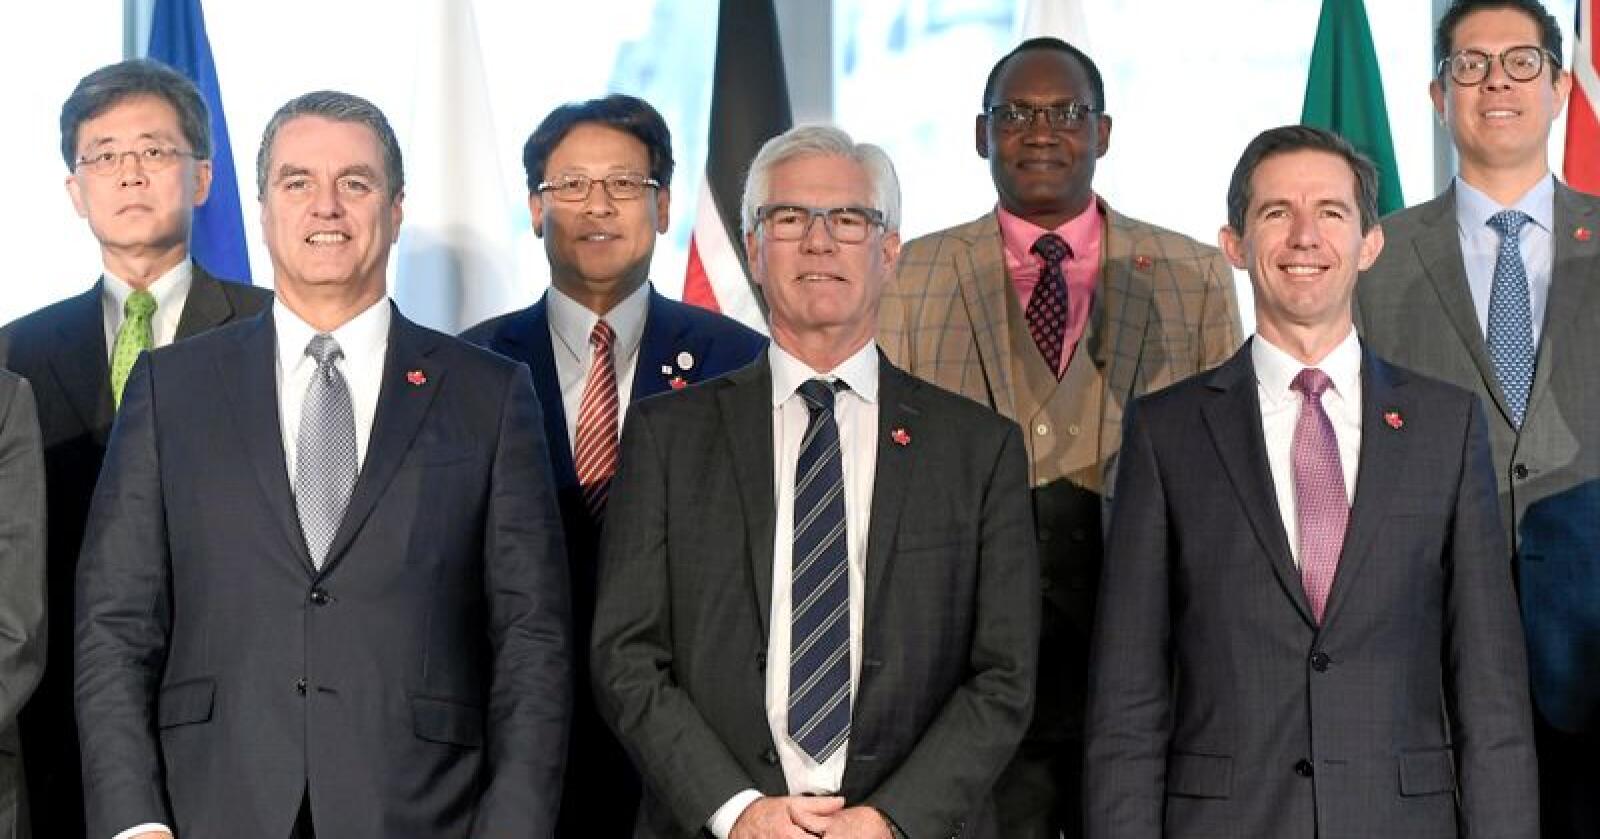 Representanter for noen av deltakerlandene på Canadas krisemøte for WTO-reform i Ottawa forrige uke. Foto: Justin Tang / Canadian Press via AP / NTB Scanpix